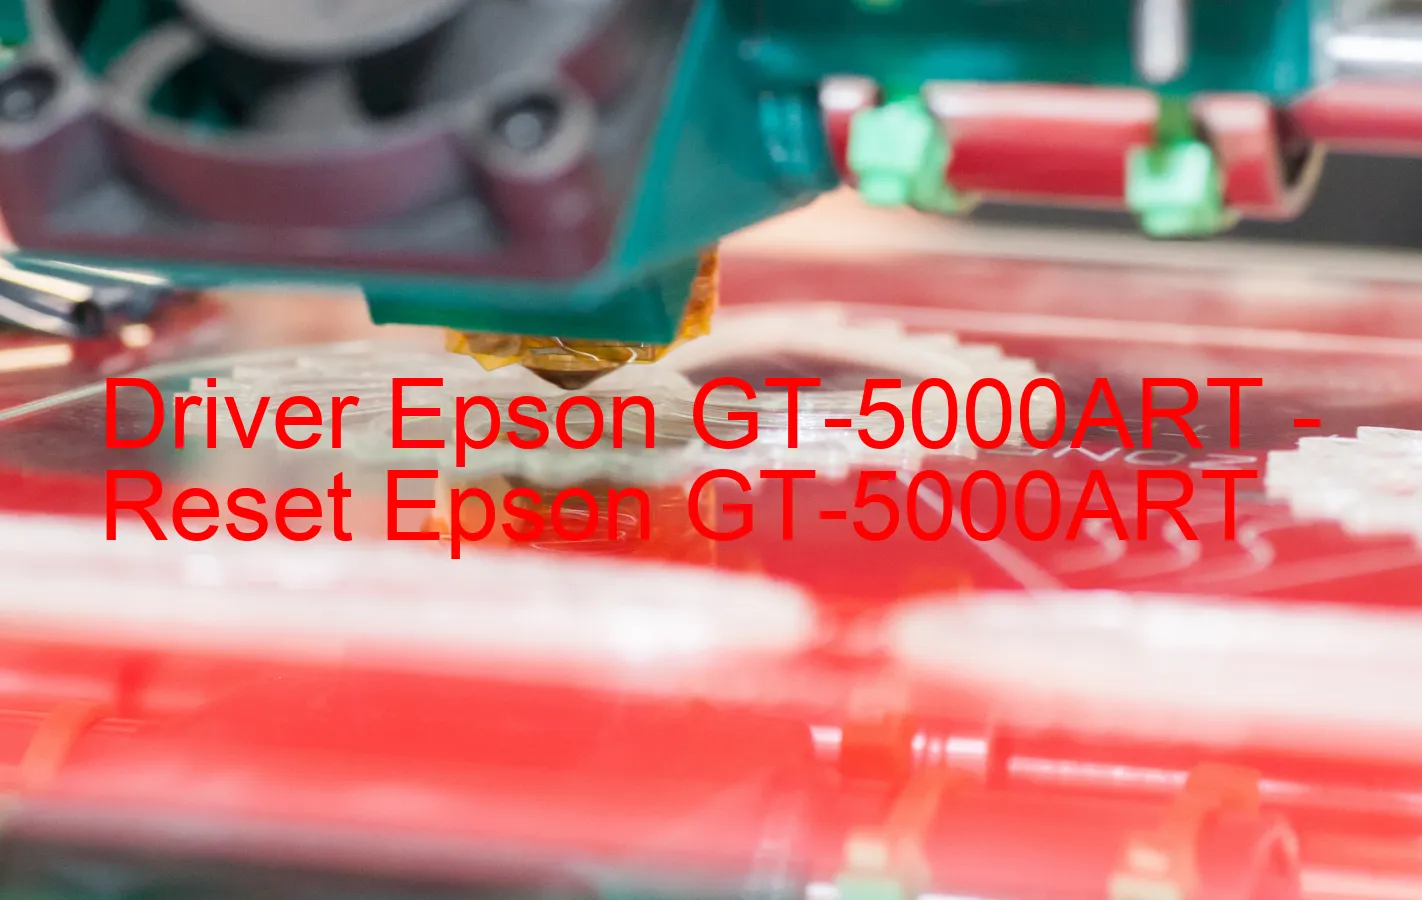 Epson GT-5000ARTのドライバー、Epson GT-5000ARTのリセットソフトウェア